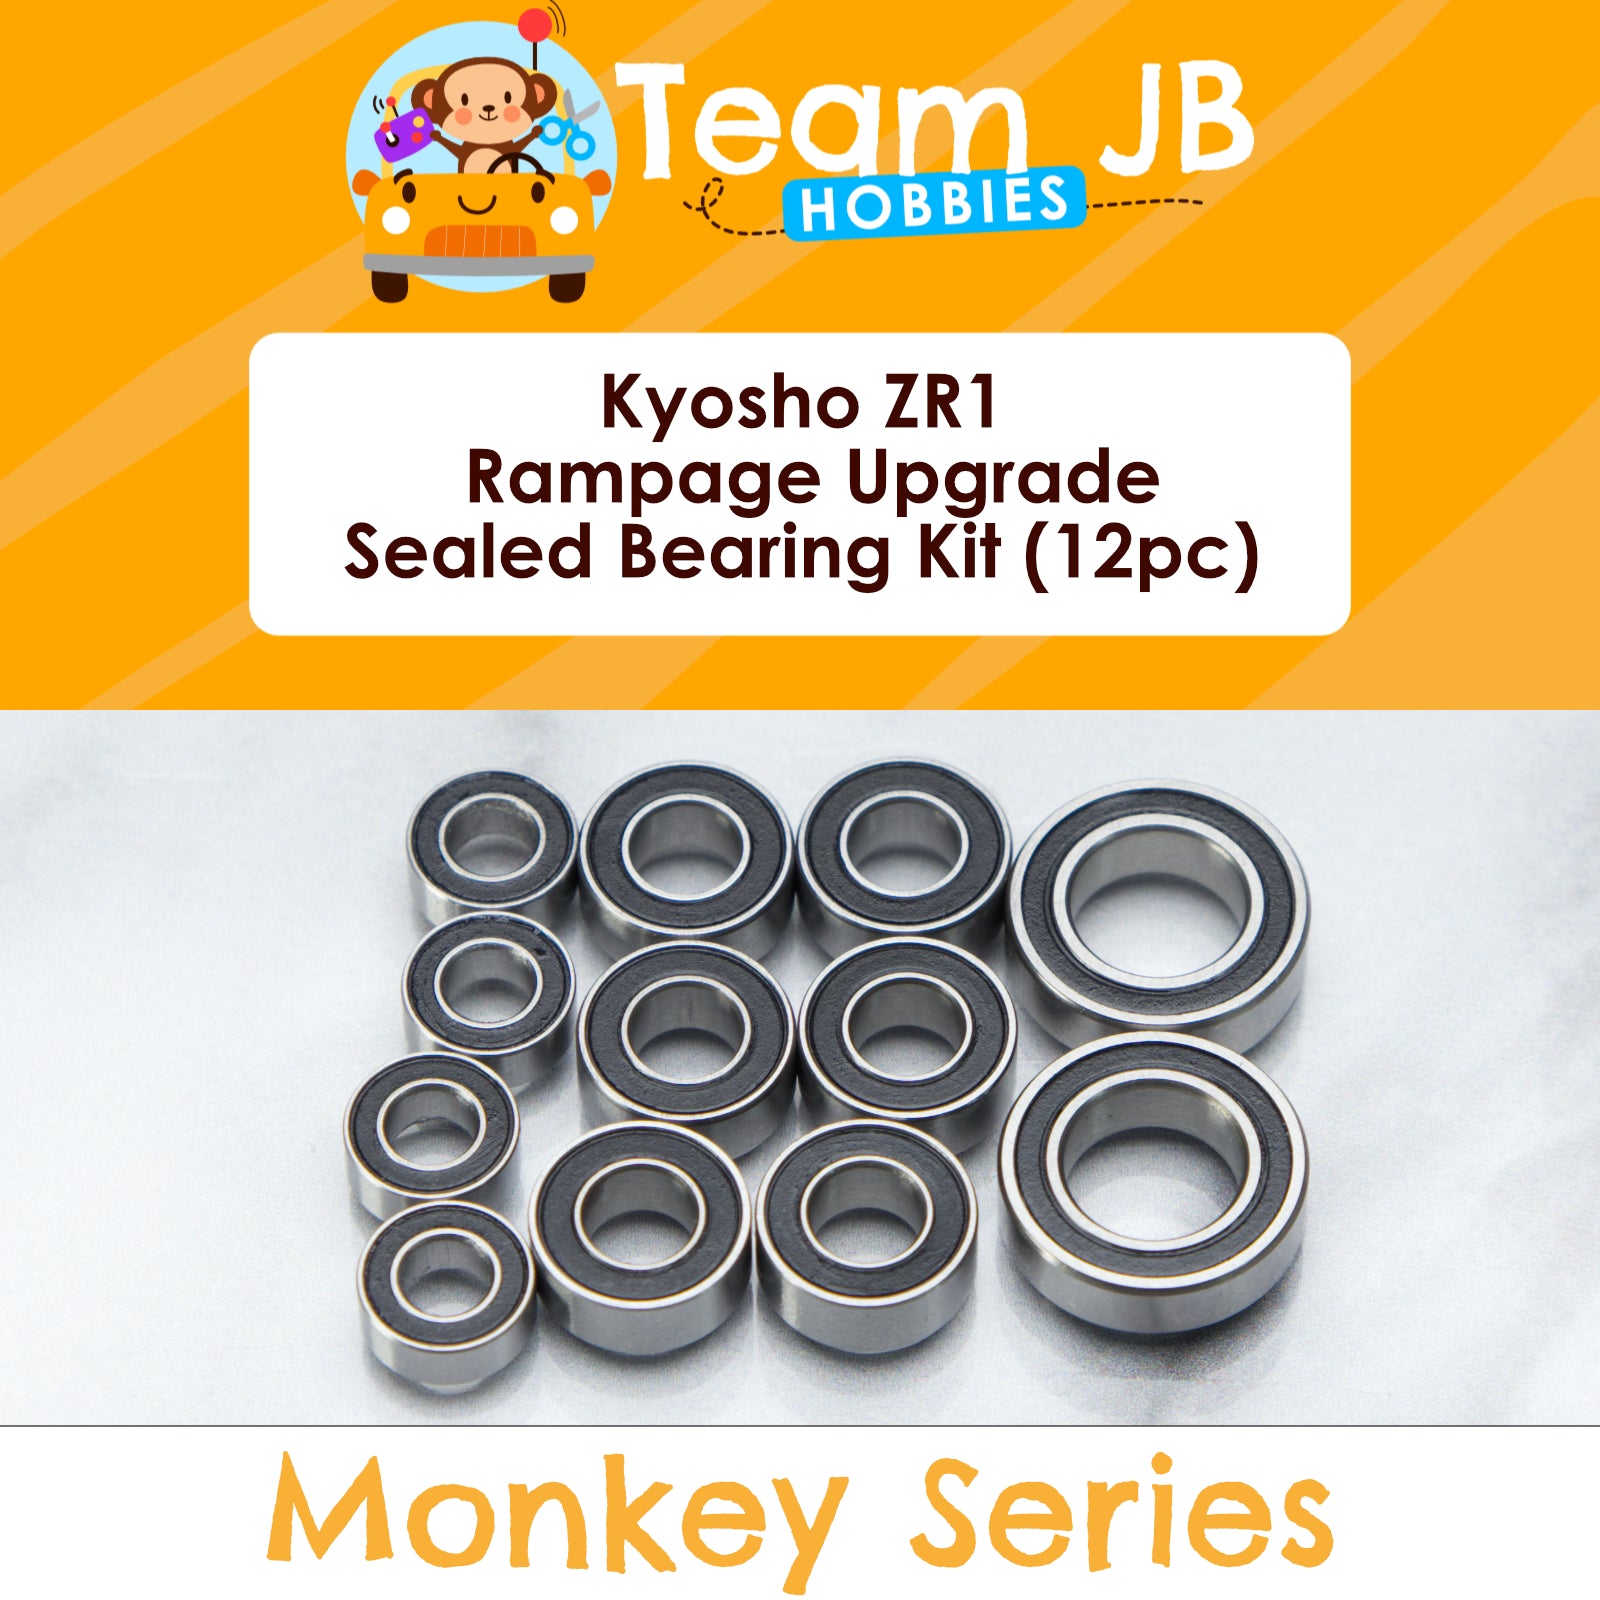 Kyosho ZR1 Rampage Upgrade - Sealed Bearing Kit